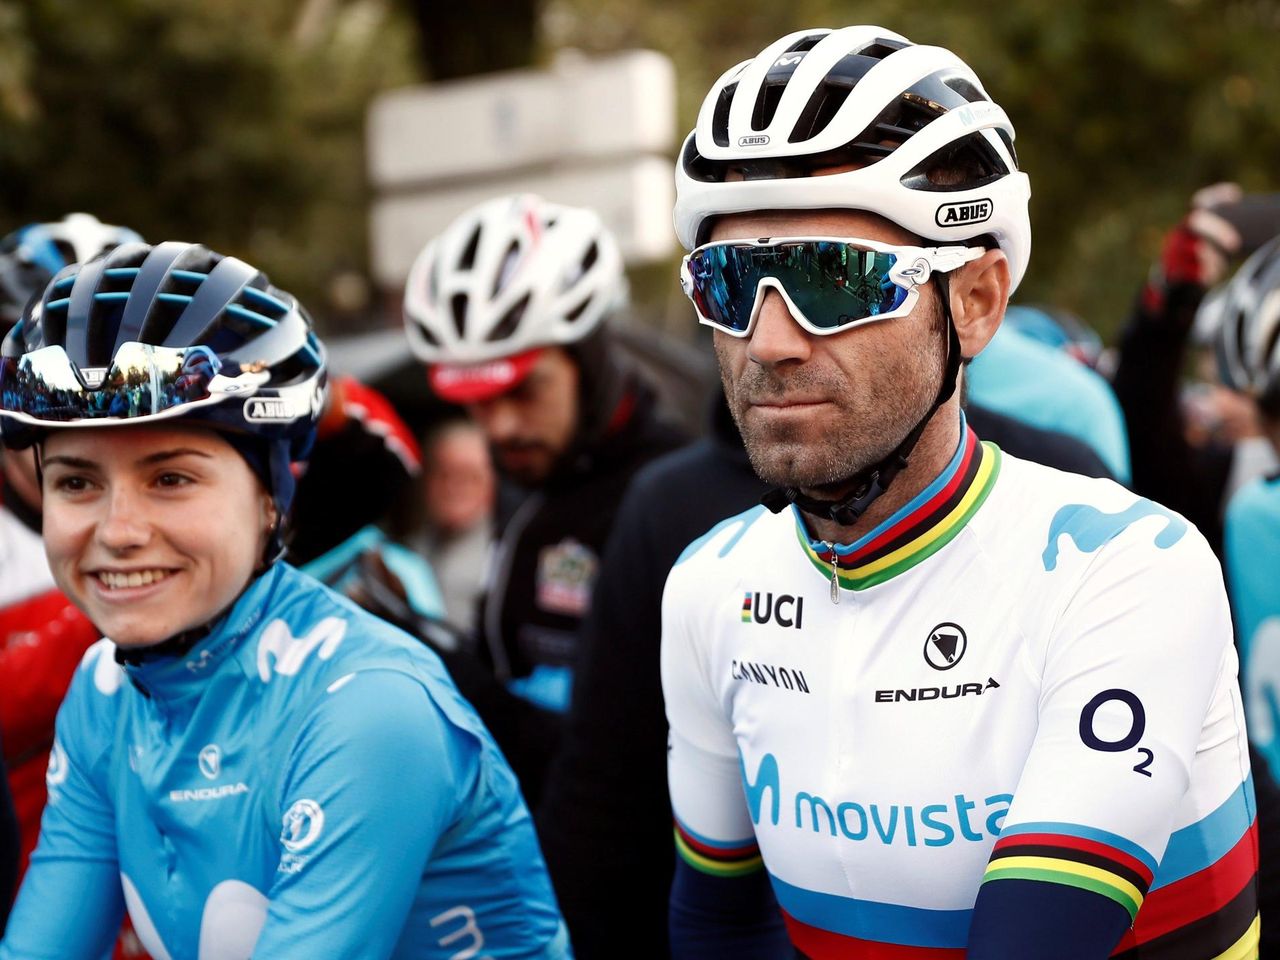 Alejandro Valverde por fin estrena su flamante maillot arcoíris: Así viste del - Eurosport